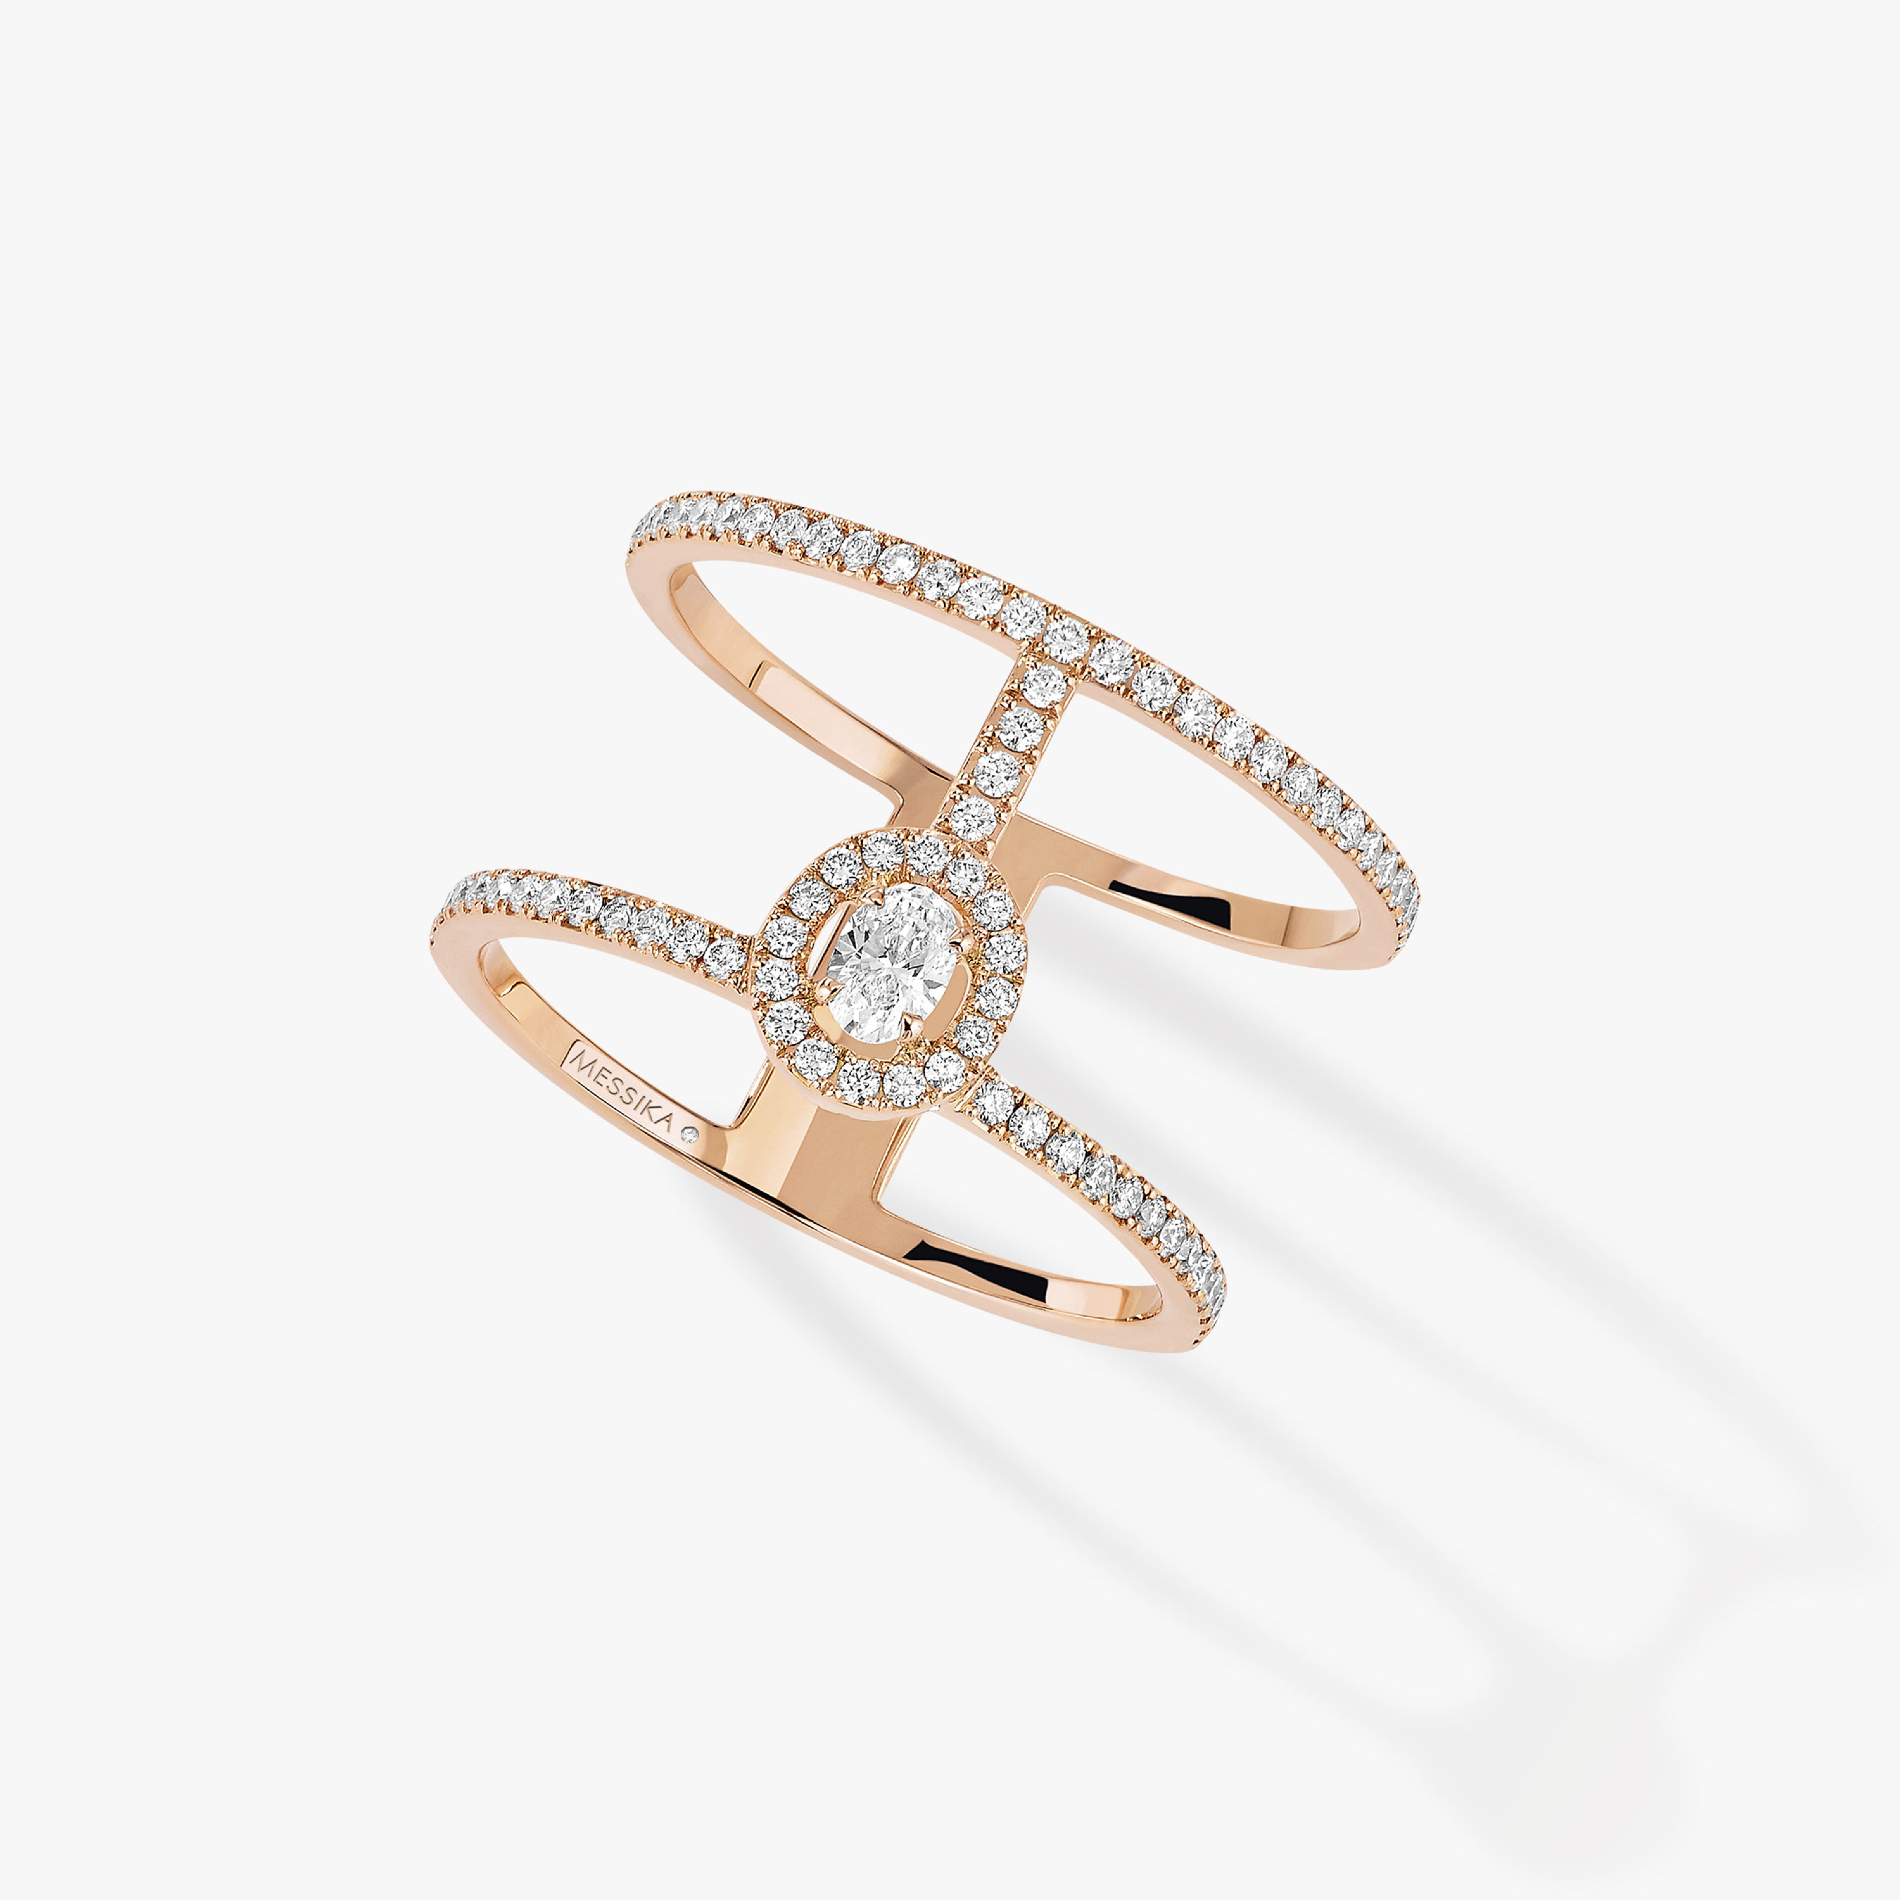 Кольцо Для нее Розовое золото Бриллиантами Glam'Azone 2 Rangs Pavée 05237-PG